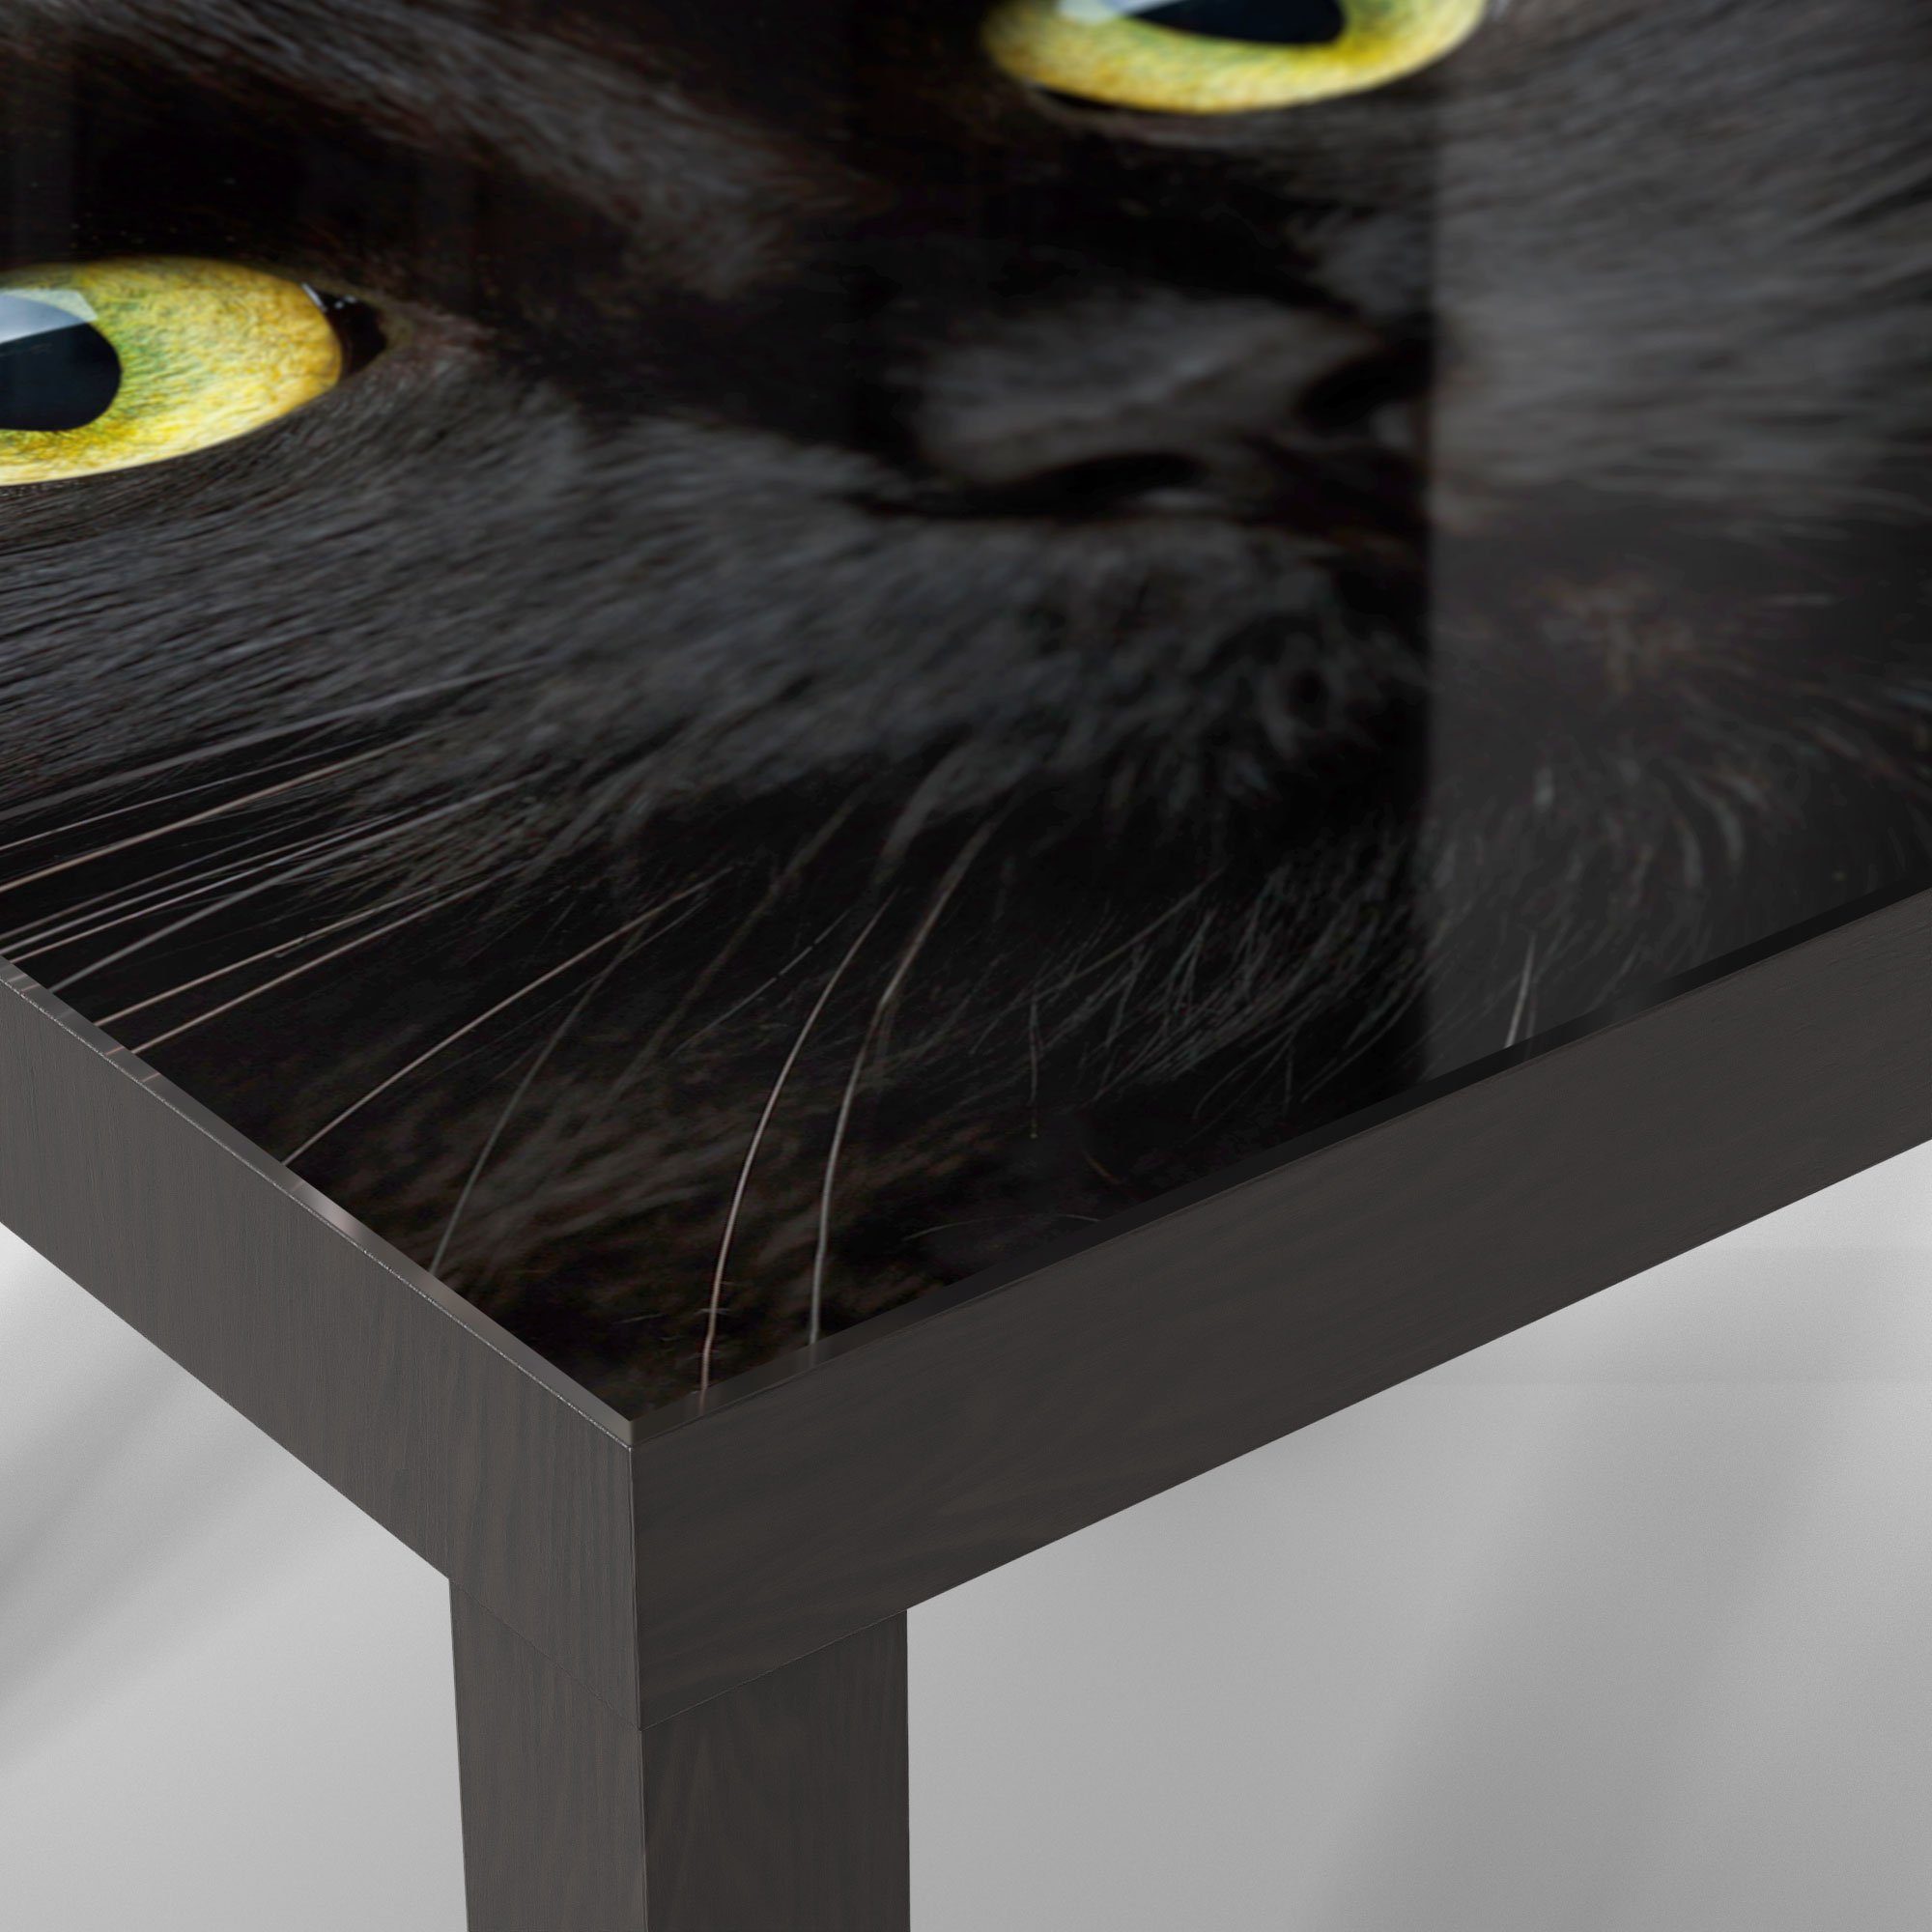 Glas Schwarz Kätzchens', Glastisch DEQORI modern Couchtisch Beistelltisch 'Gesicht eines